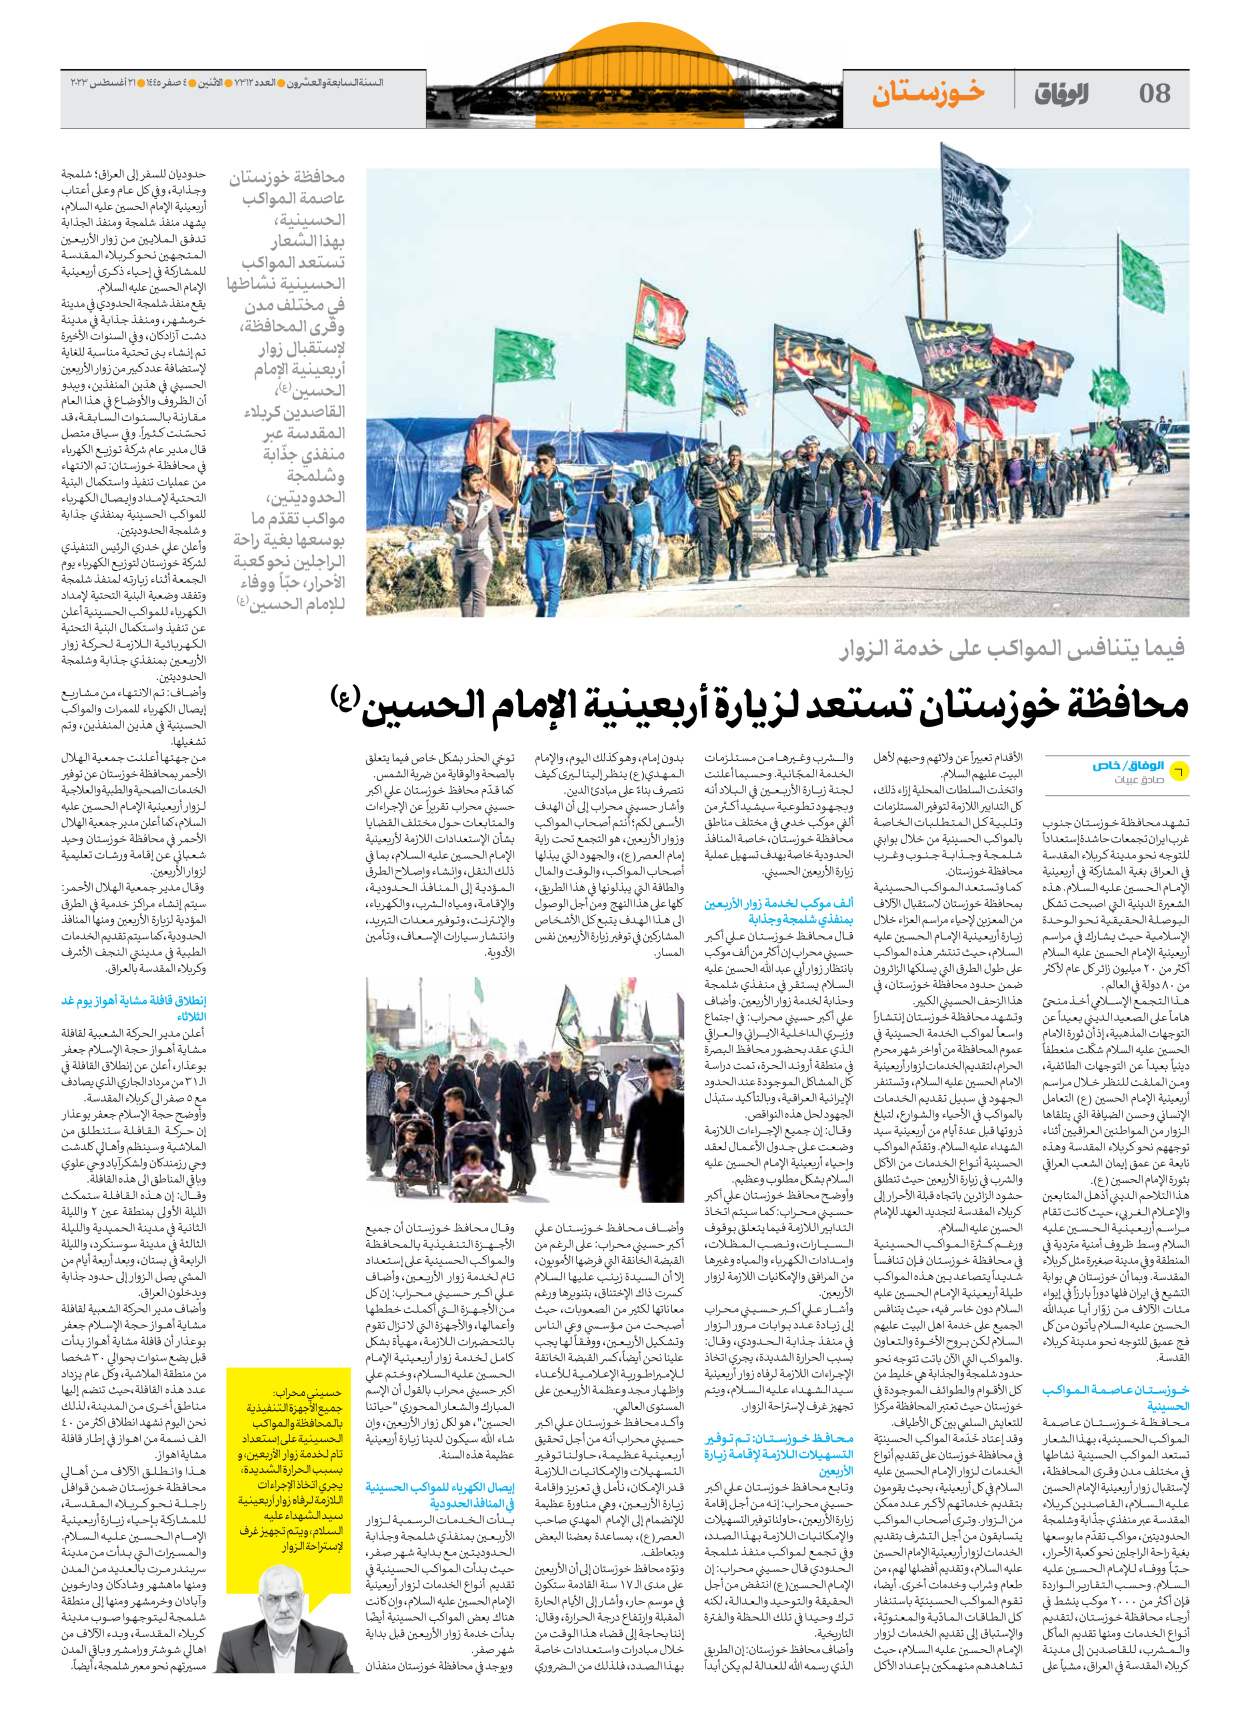 صحیفة ایران الدولیة الوفاق - العدد سبعة آلاف وثلاثمائة واثنا عشر - ٢١ أغسطس ٢٠٢٣ - الصفحة ۸